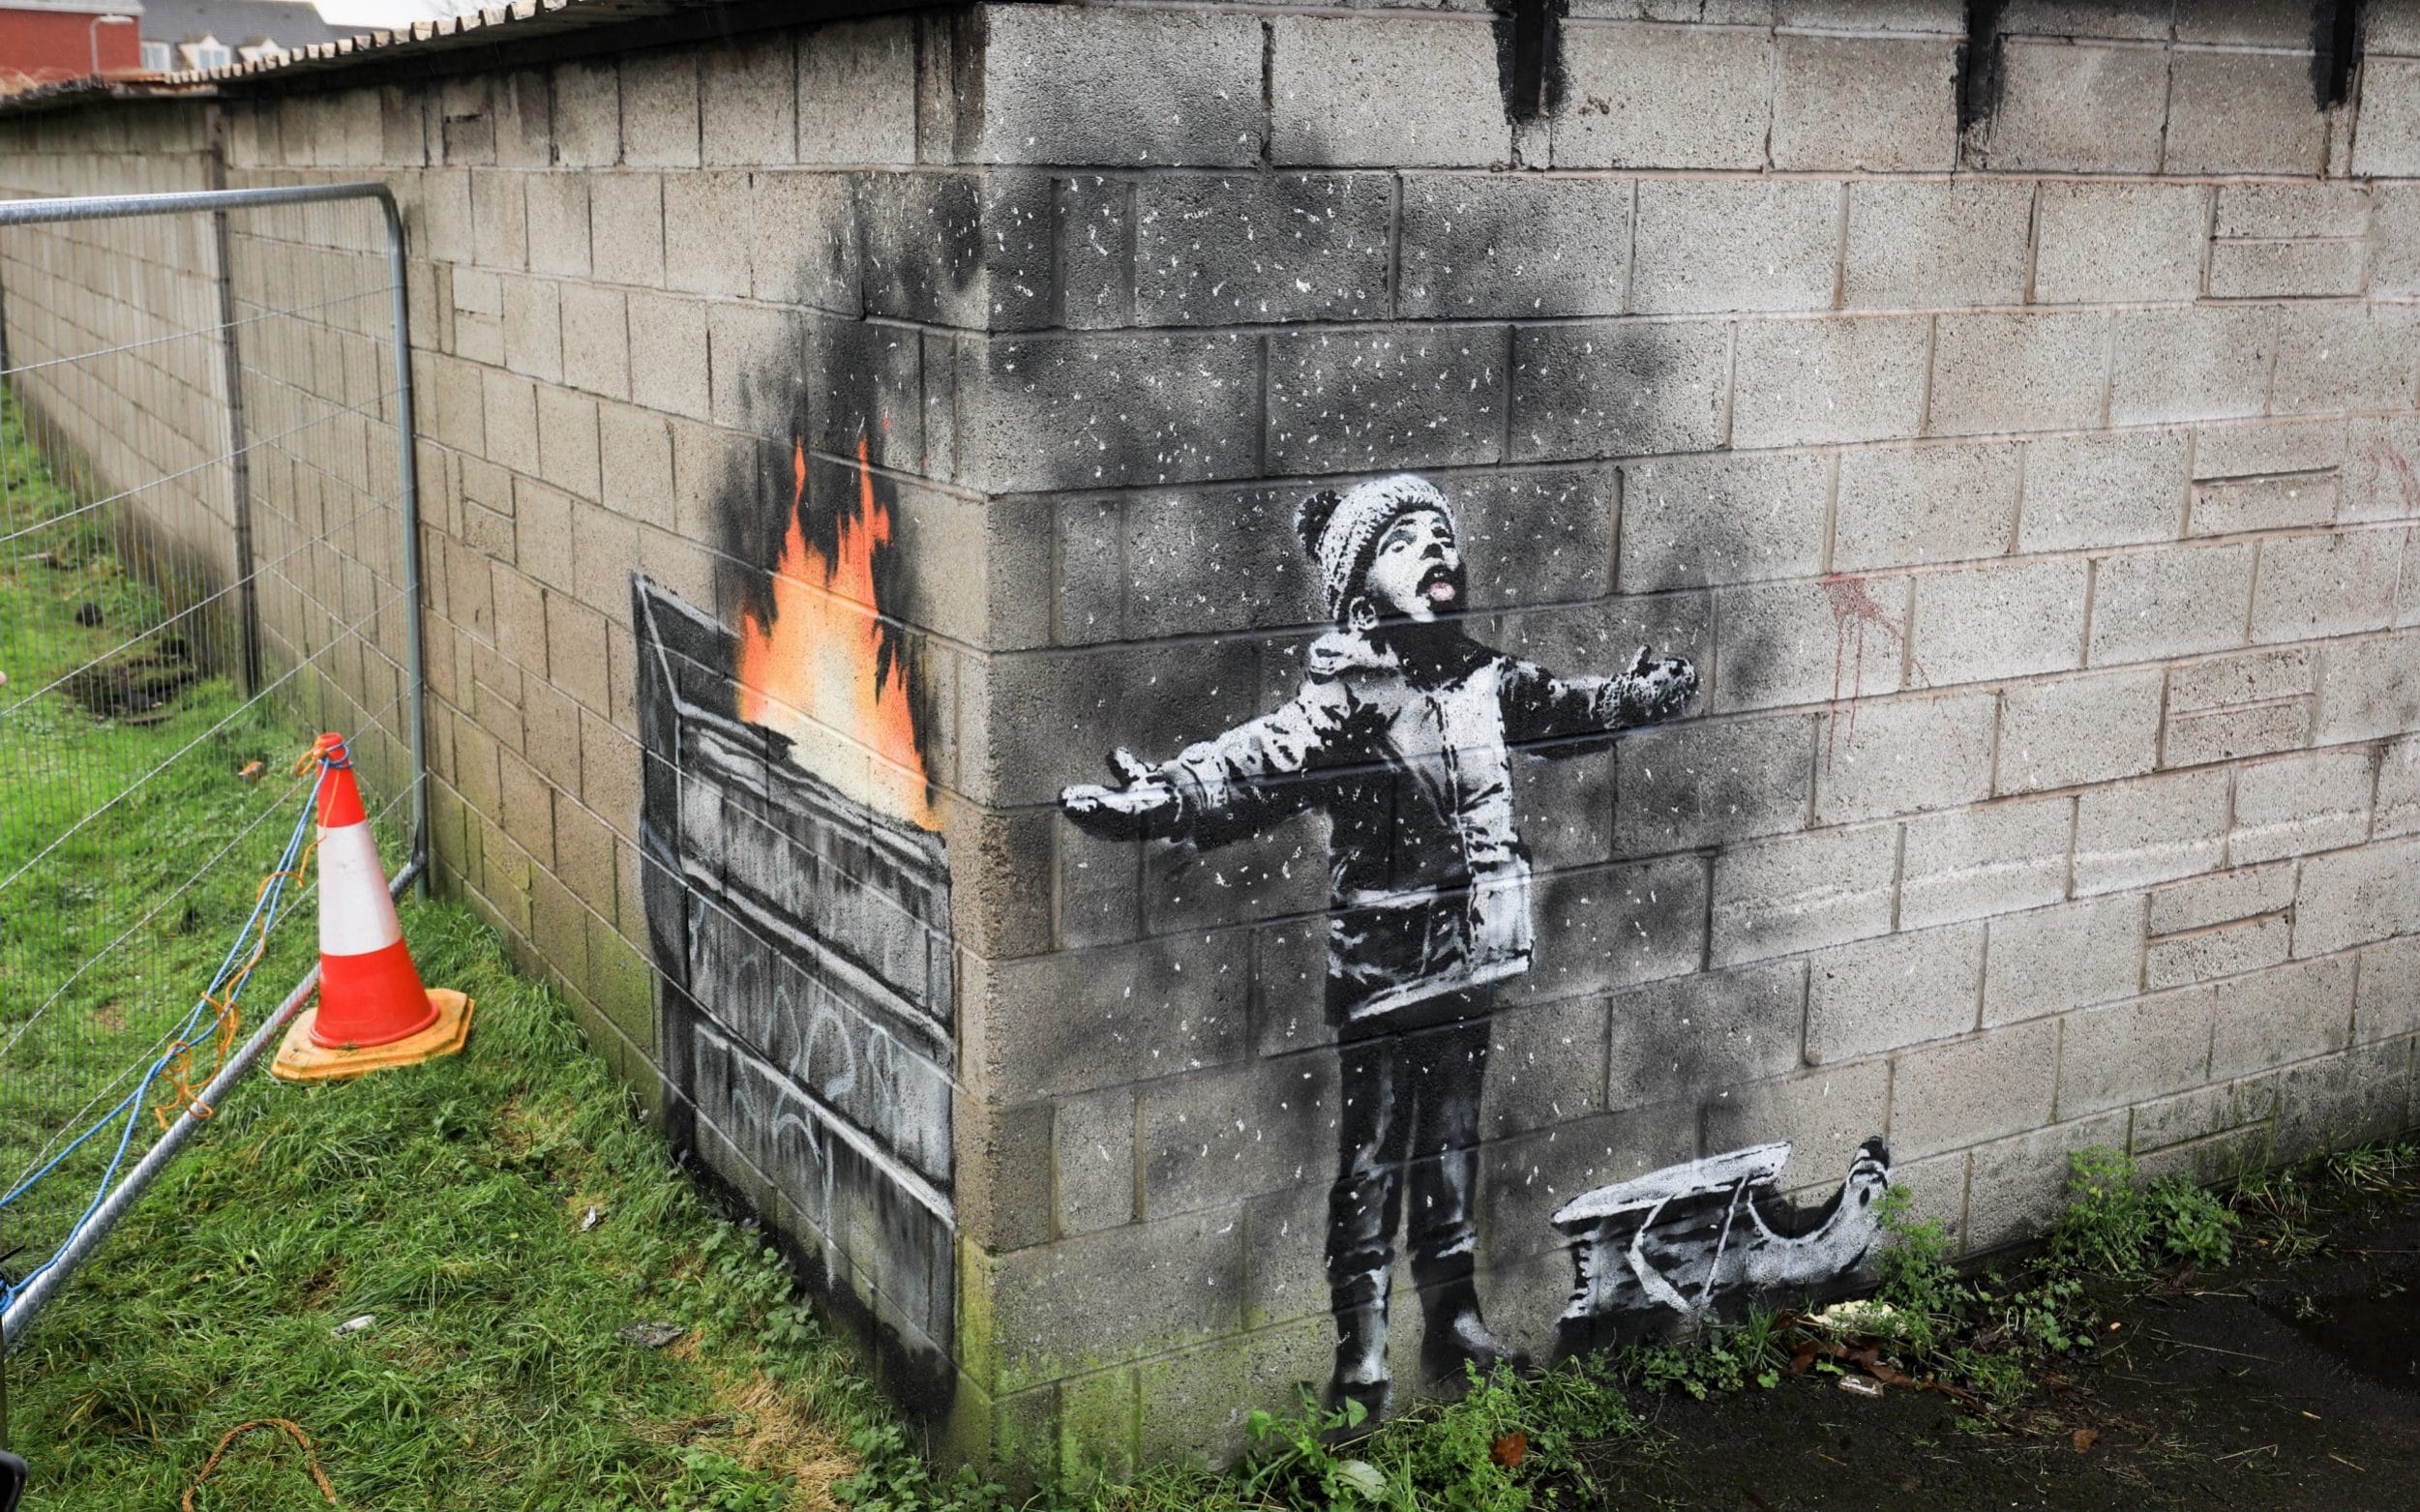 Yazı: Banksy ve Kendini İmha Eden Eseri | Yazan: Pelin Erem